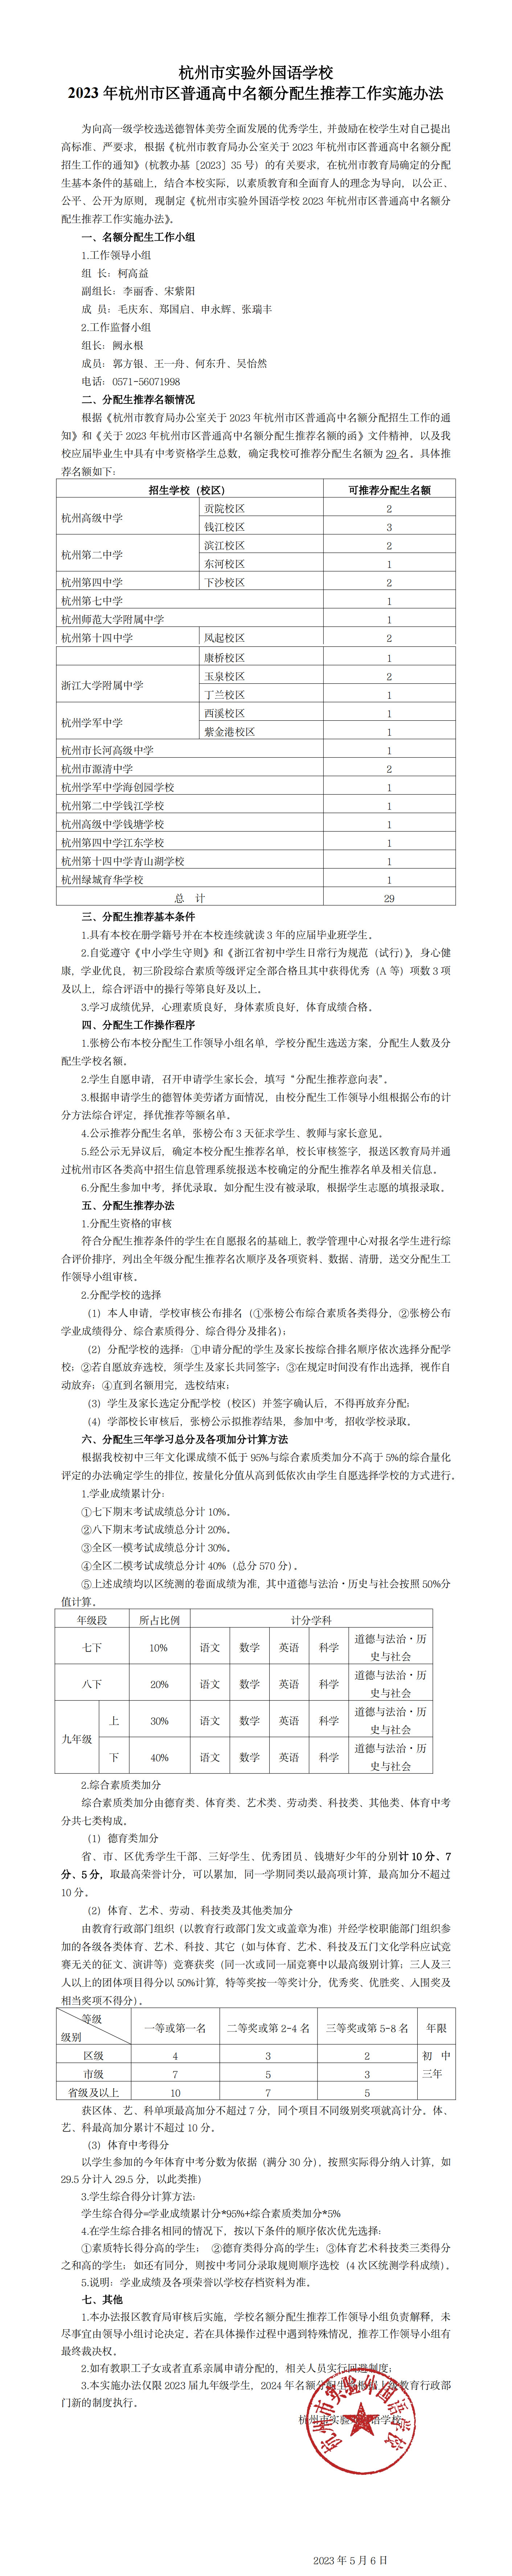 15杭州市实验外国语学校2022年杭州市区普通高中名额分配生推荐工作实施办法20230507副本.jpg